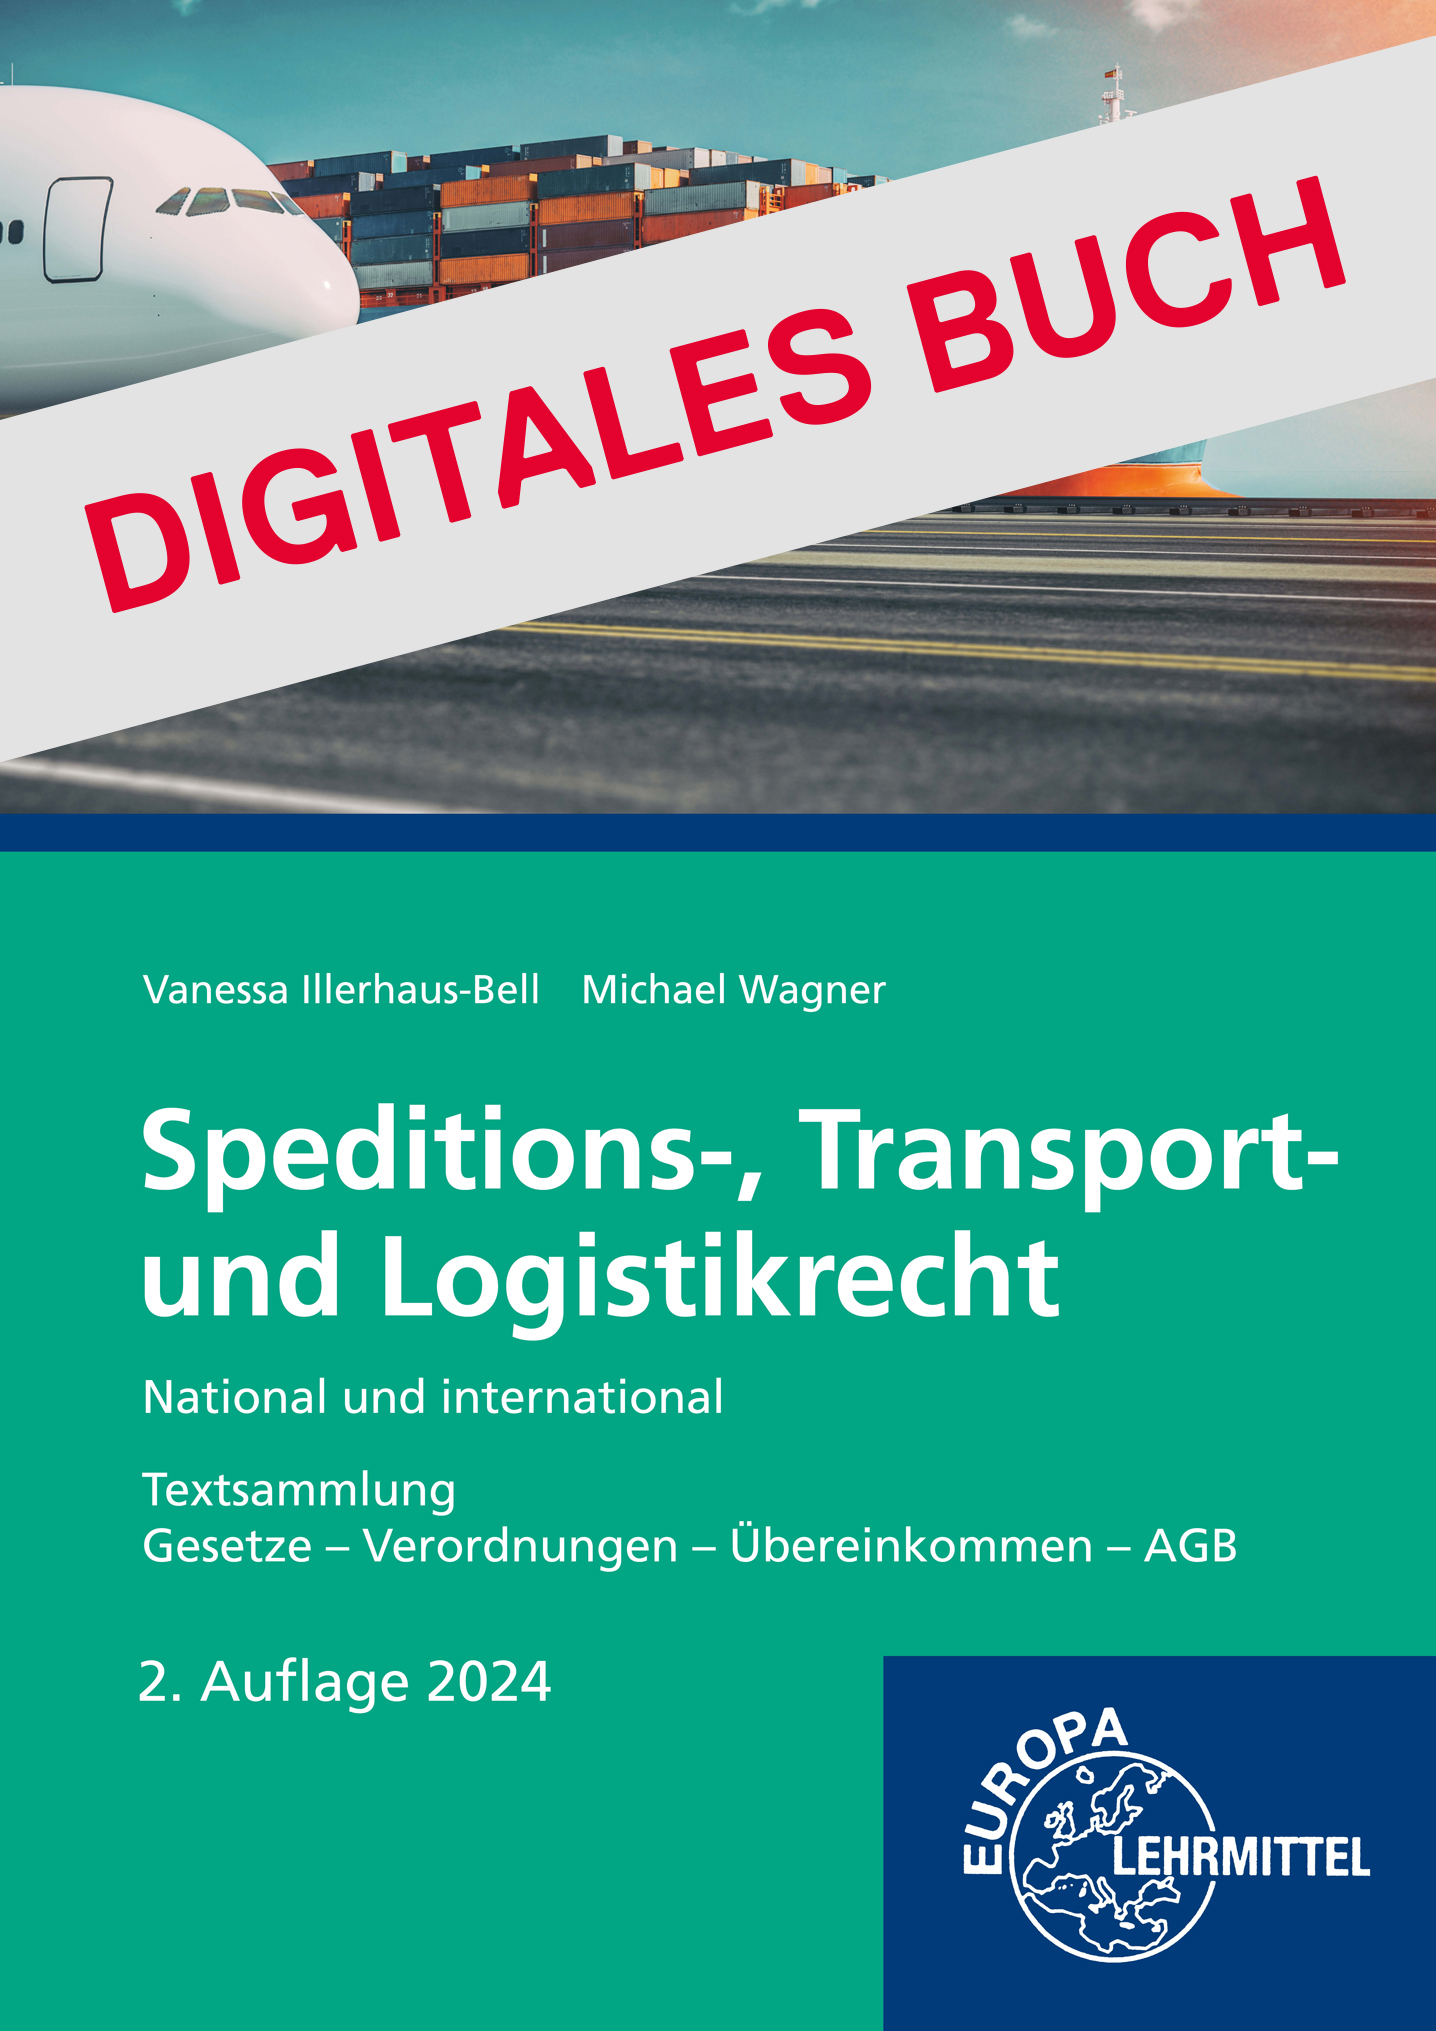 Speditions-, Transport- und Logistikrecht - National und international Digitales Buch 